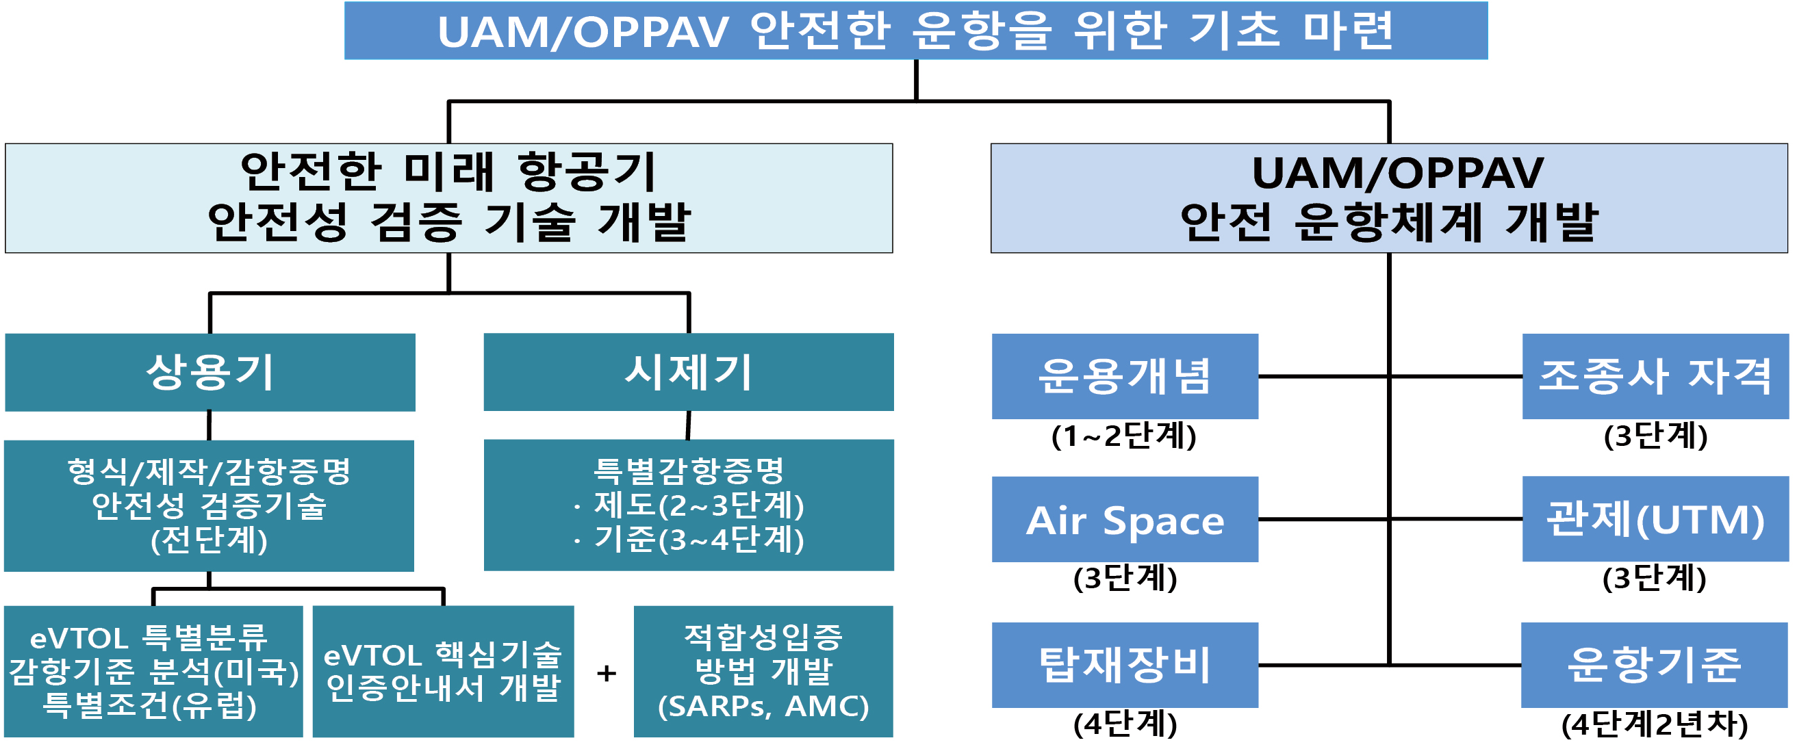 UAM/OPPAV 안전한 운항을 위한 기초 마련
				안전한 미래 항공기 안전성 검증 기술 개발상용기시제기
				UAM/OPPAV 안전 운항체계 개발 운용개념 (1~2단계) (3단계) (4단계)
				조종사 자격 (3단계) 관제(UTM) (3단계) 운항기준 (4단계2년차) 형식/제작/감항증명
				특별감항증명 안전성 검증기술 (전단계) · 제도(2~3단계)
				• 기준(3~4단계) Air Space eVTOL 특별분류 적합성입증
				감항기준 분석(미국) 특별조건(유럽) eVTOL 핵심기술 인증안내서 개발
				+ 방법 개발 탑재장비(SARPs, AMC)